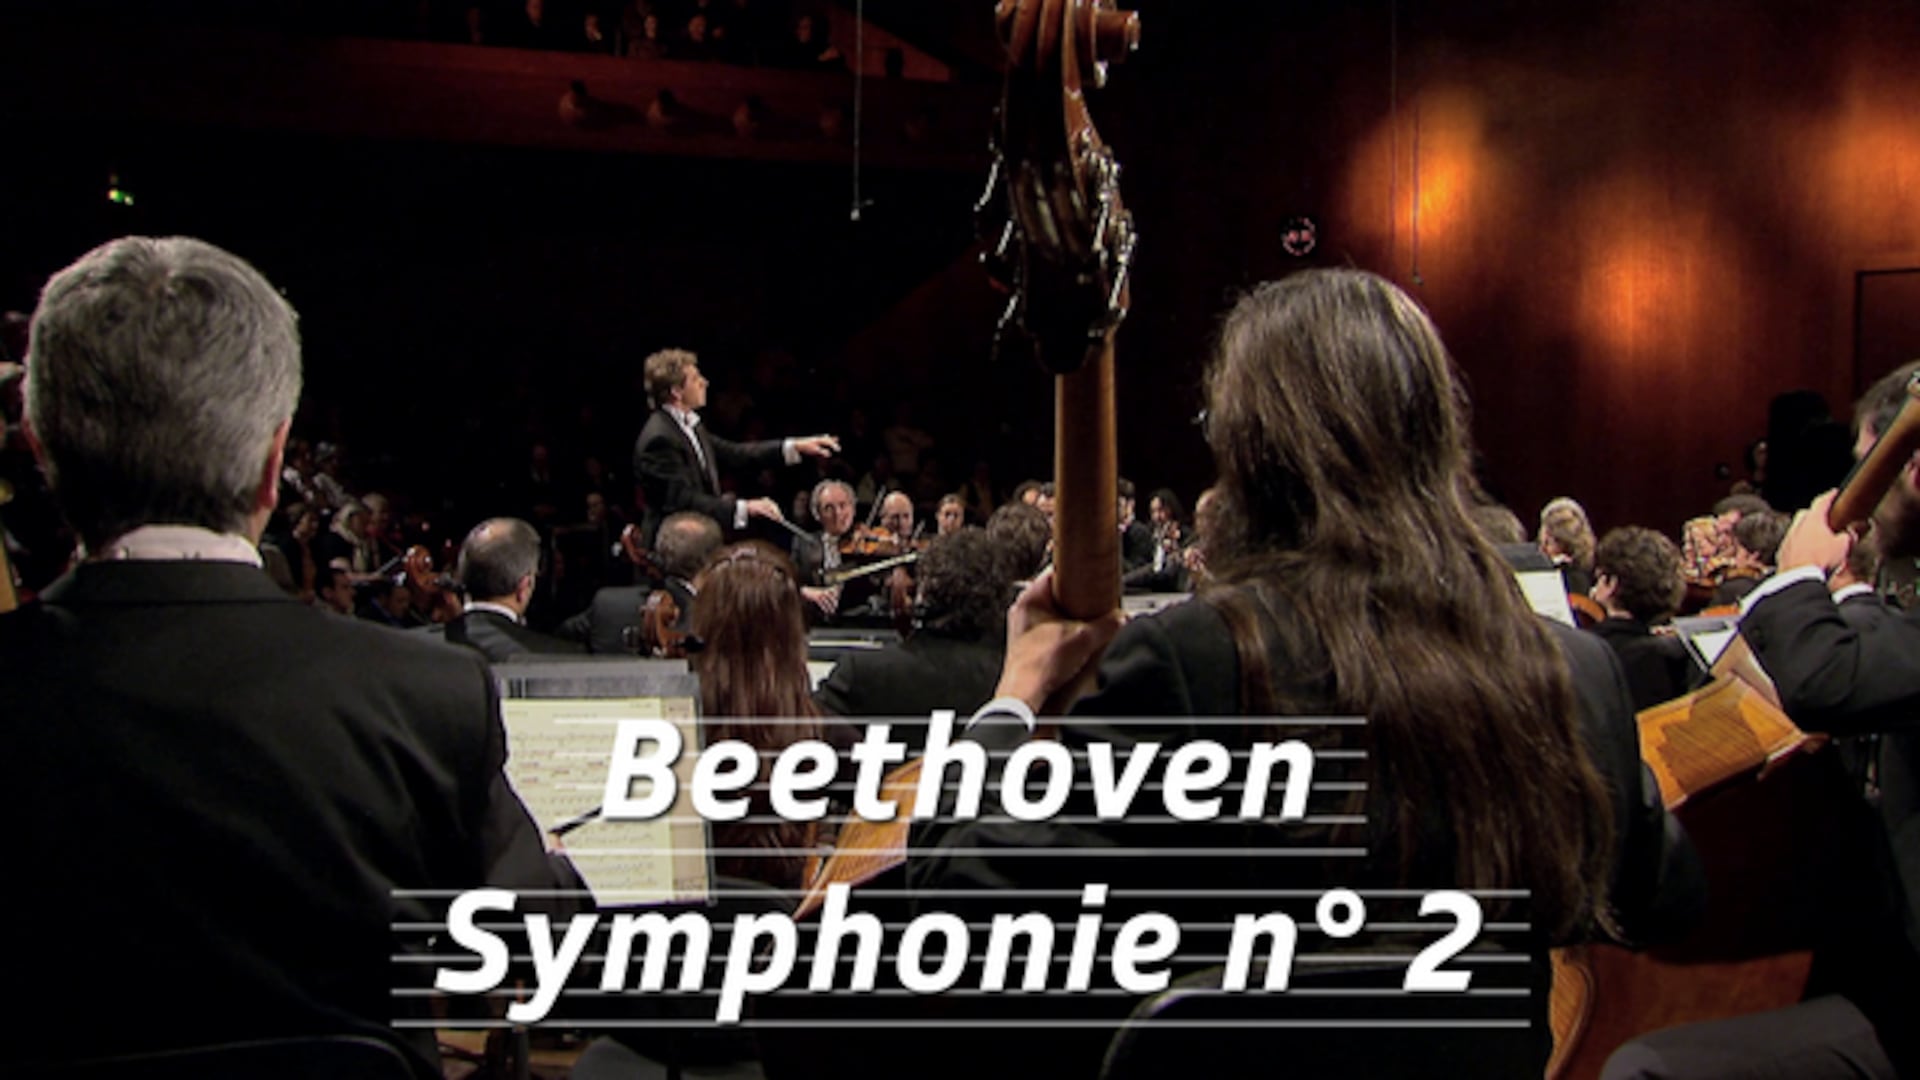 Beethoven - Symphonie n° 2